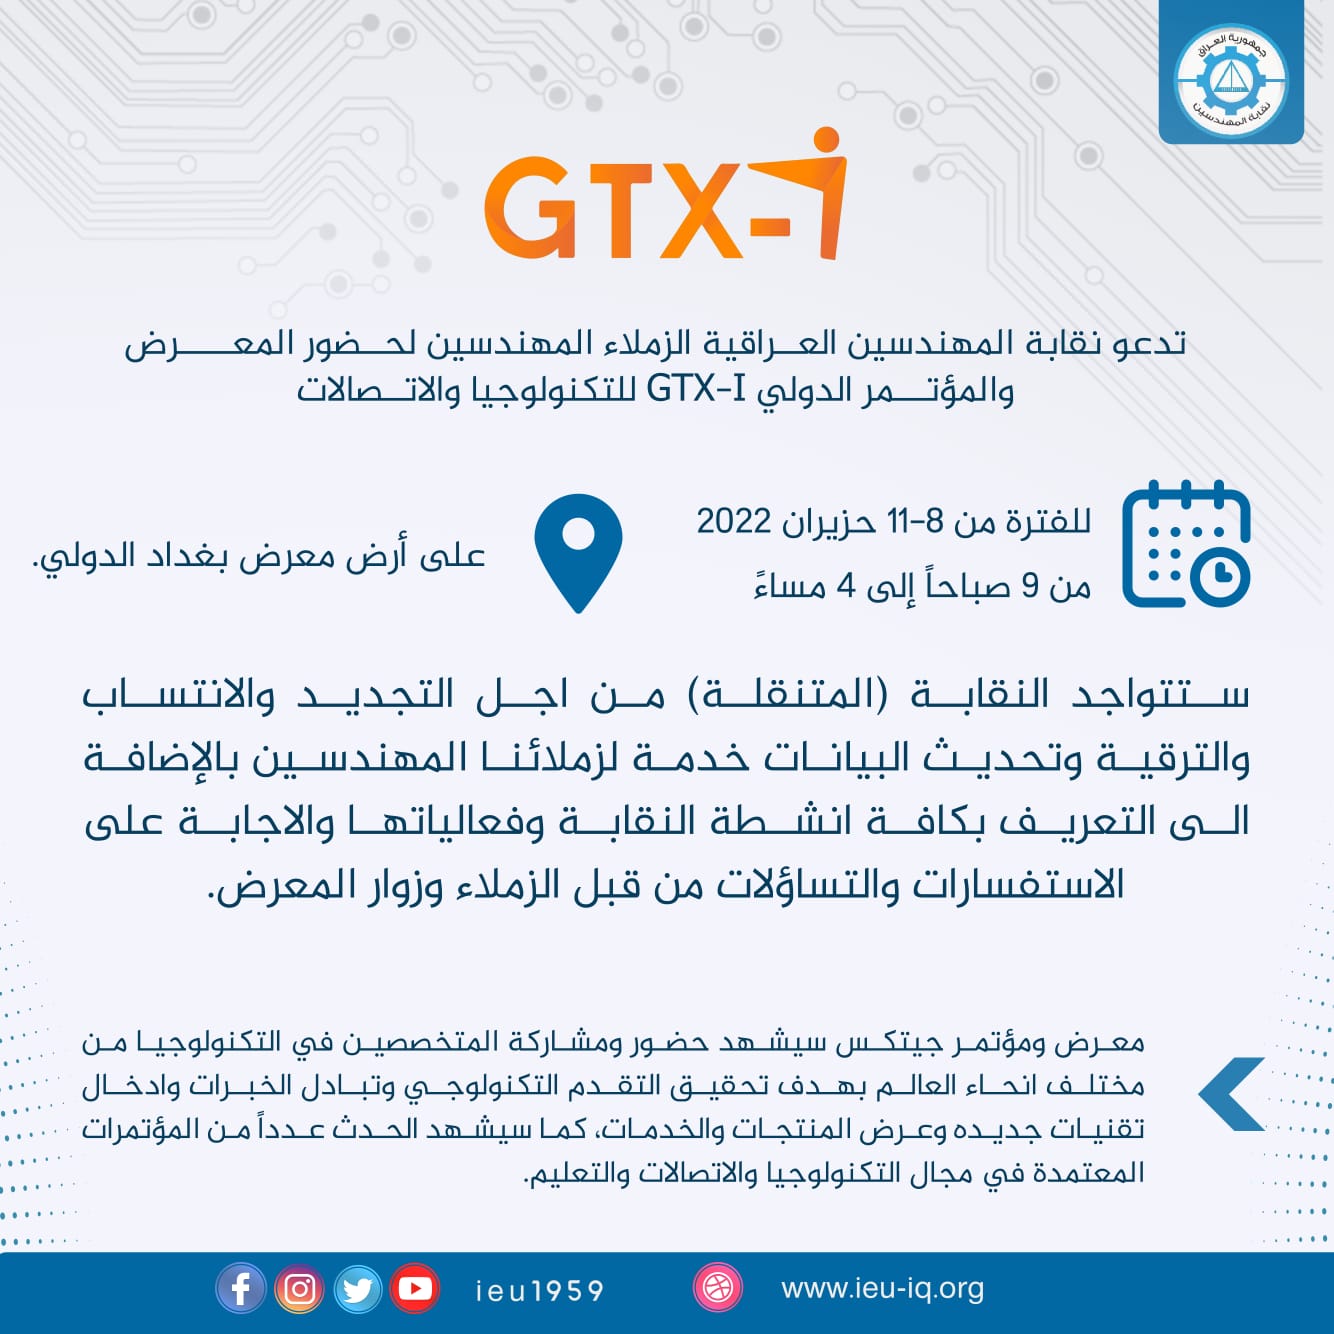 دعوة لحضور المعرض والمؤتمر الدولي GTX-I للتكنولوجيا والاتصالات